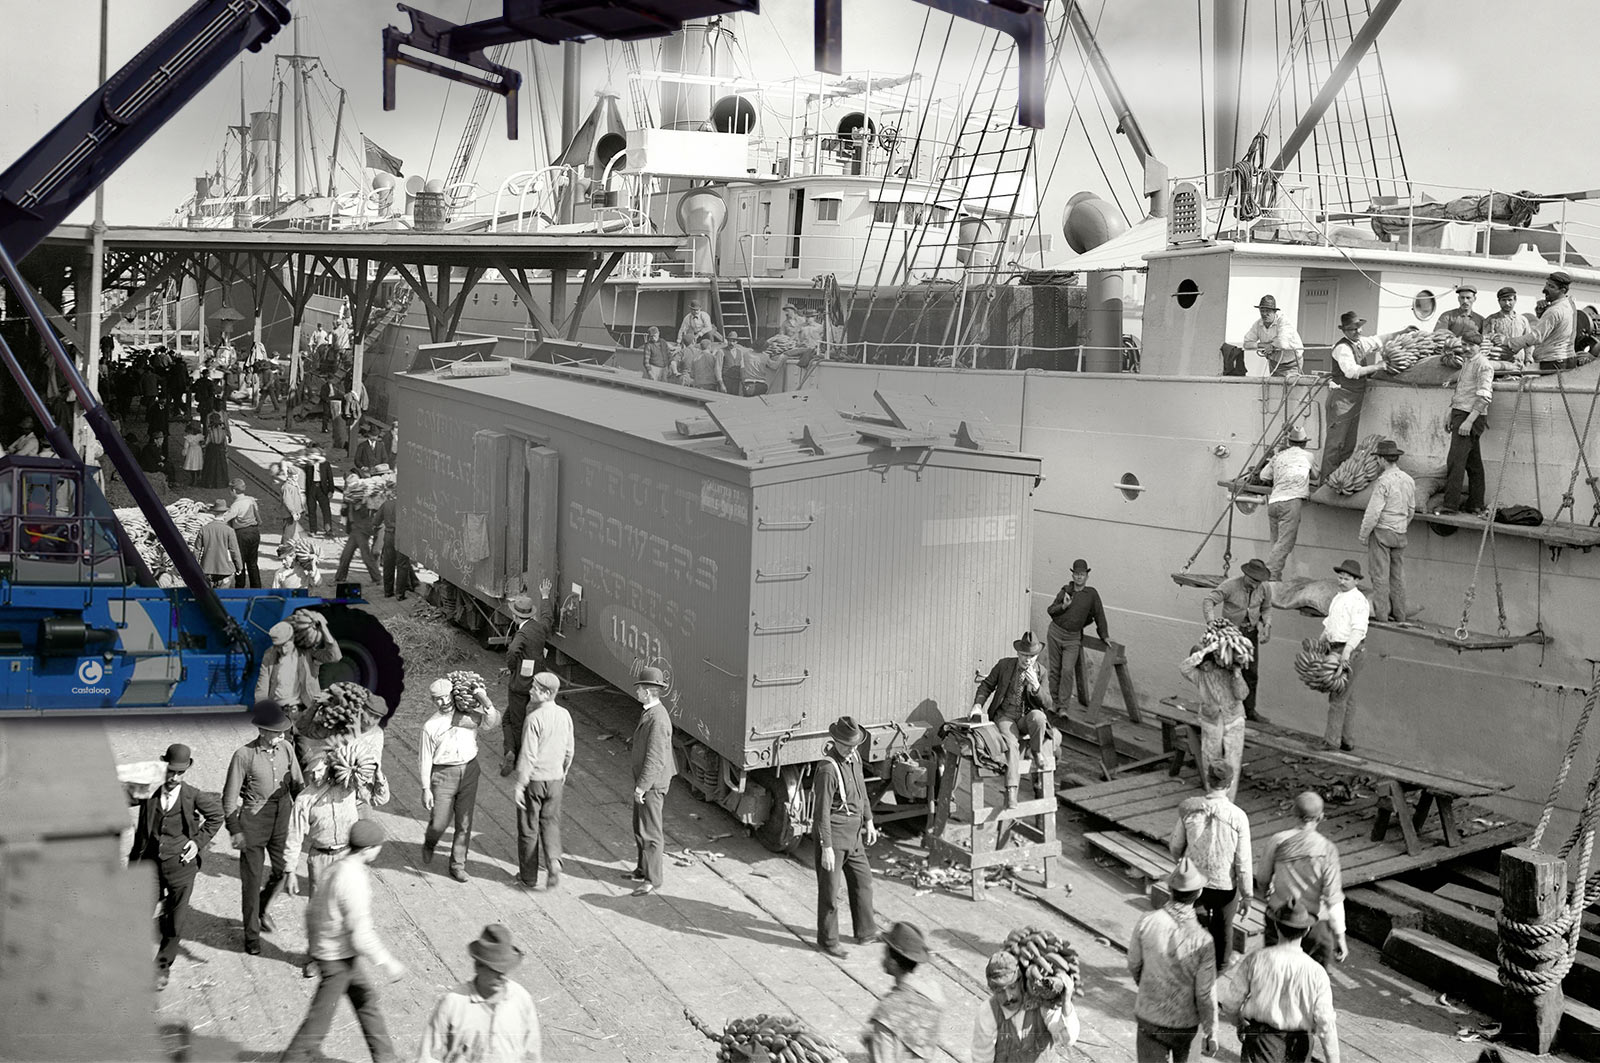 Прибывает пароход. Морской порт 1960 Клайпеда. Порт 19 века в США. Порт Нью Йорка 20 век. Докер в порту 1950.